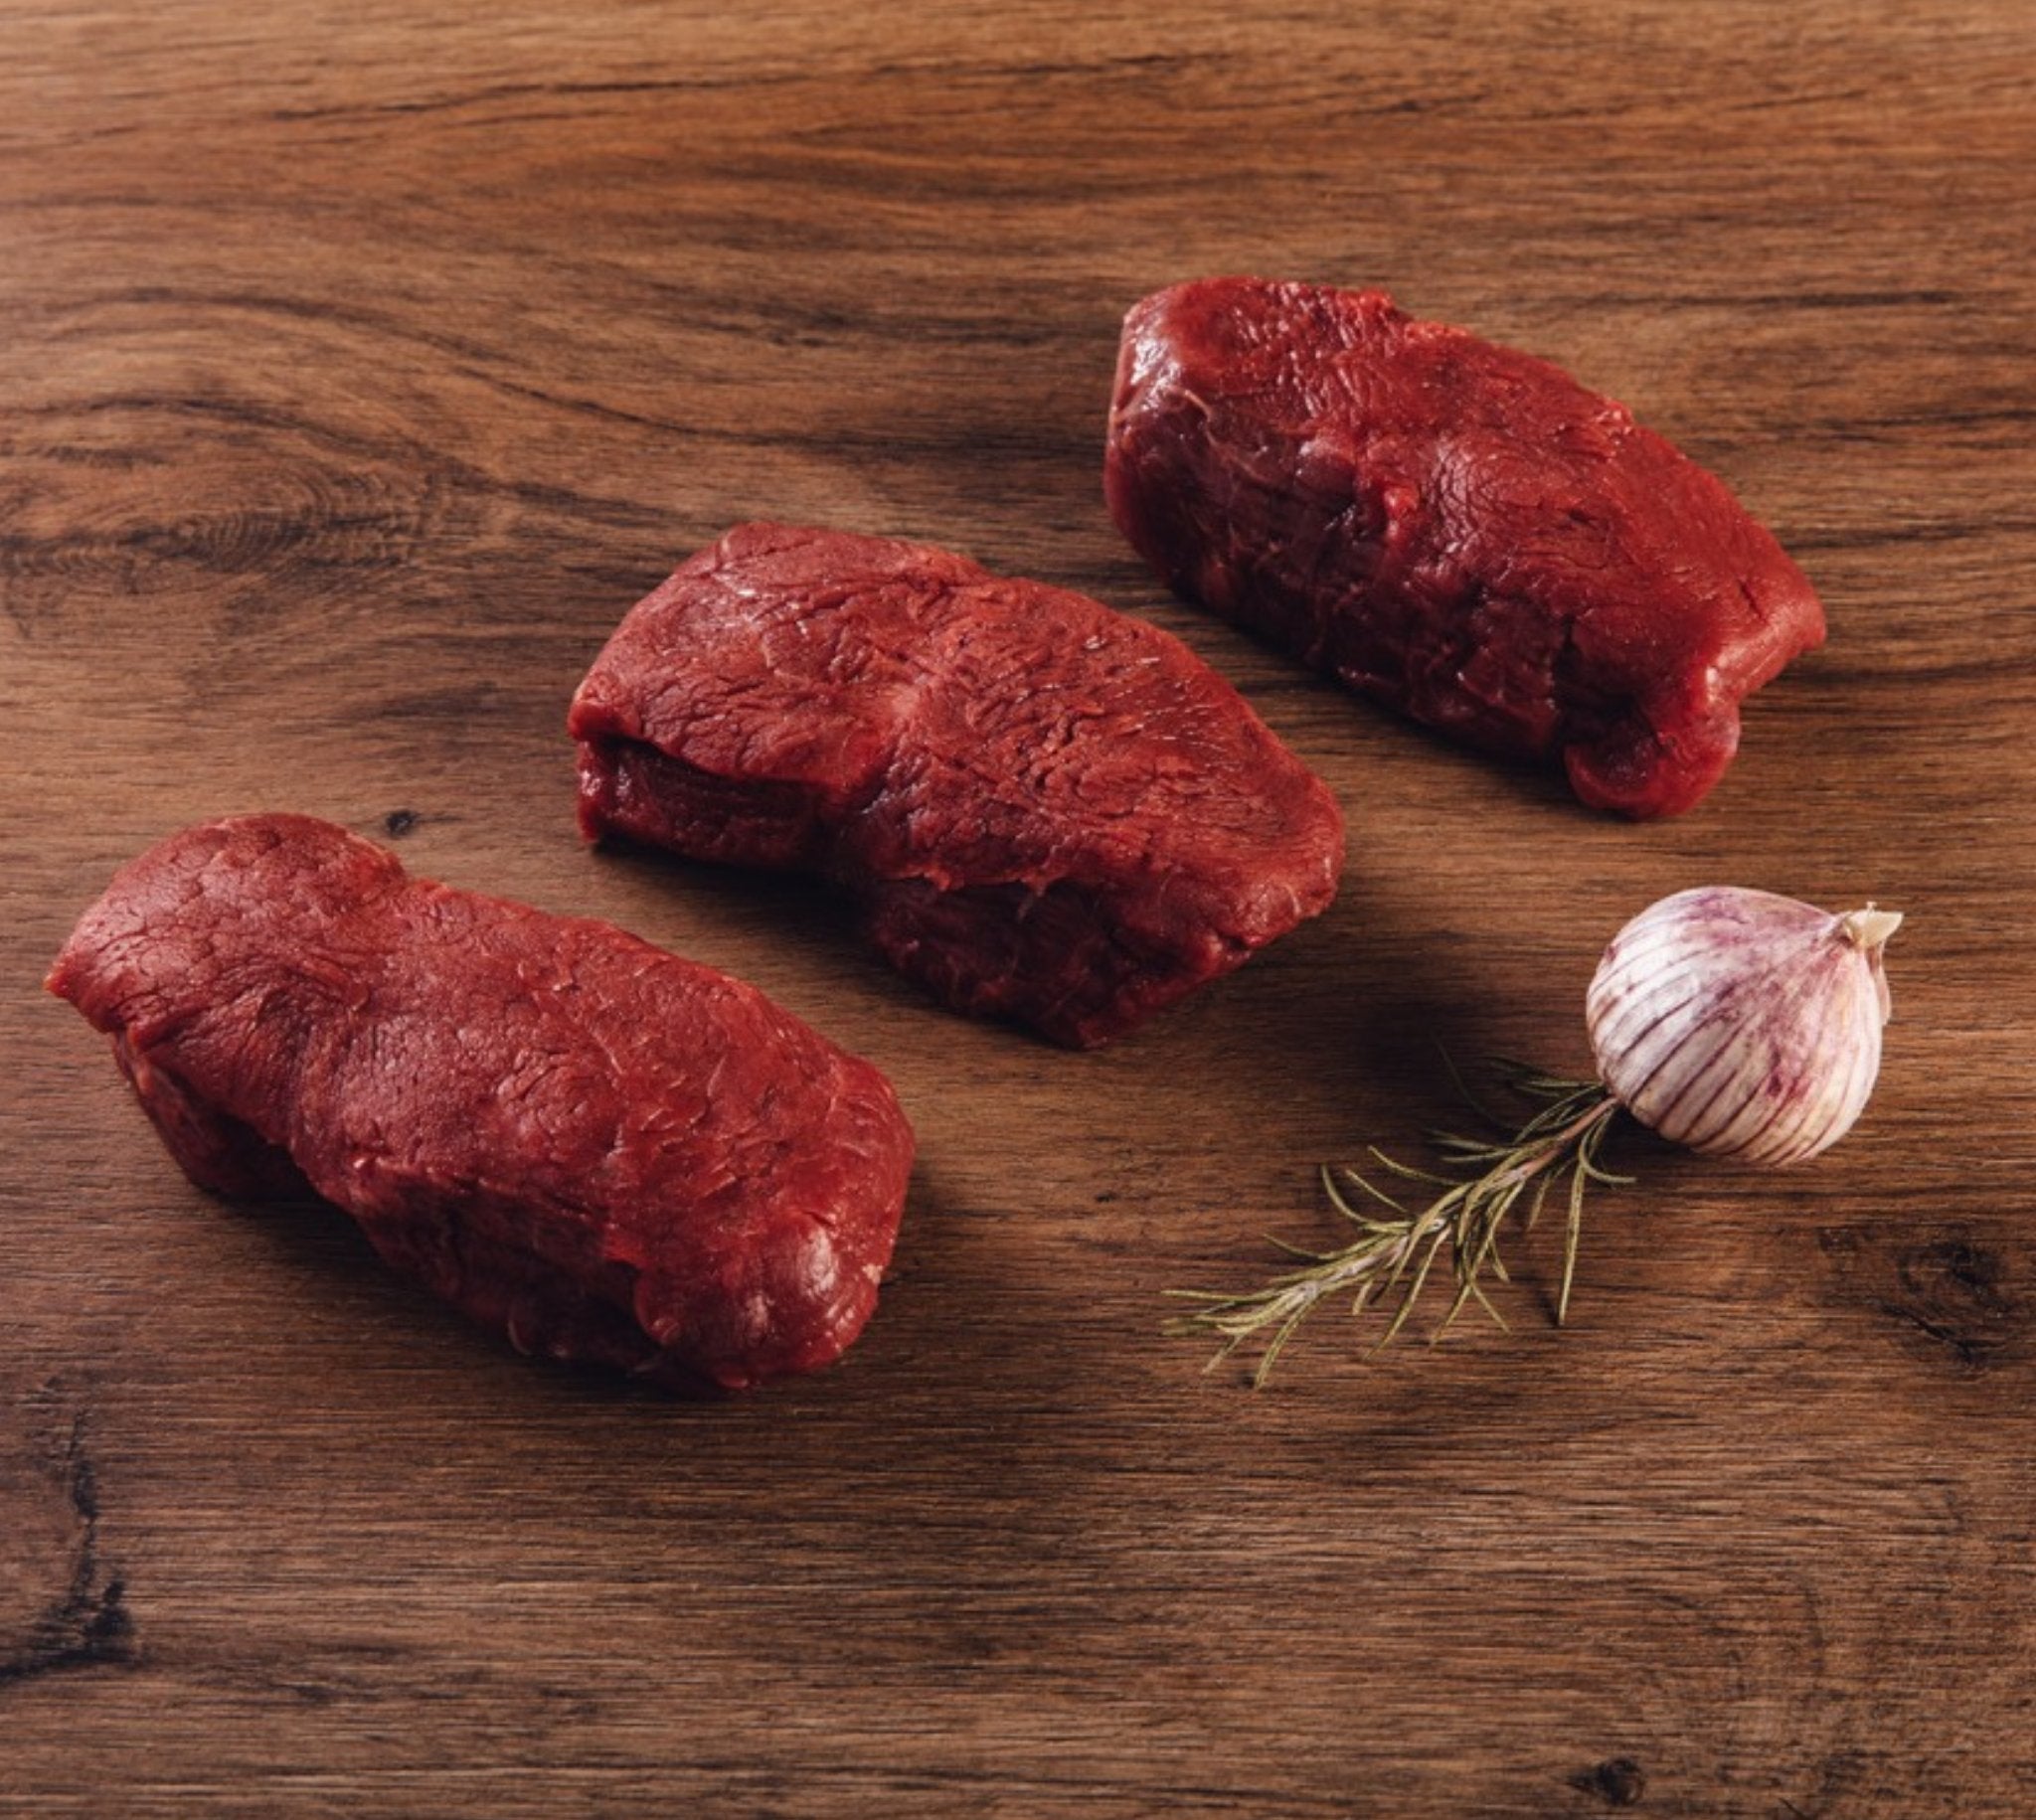 Italienisches Büffel Filet Steak - Natürlich & Zart | BüffelBill Genießen Sie saftige, zarte Filet Steaks vom italienischen Büffel bei BüffelBill. Natürlich aufgewachsen, mit Kräutern und Wildblumen gefüttert. Entdecken Sie das einzigartige Geschmackserle